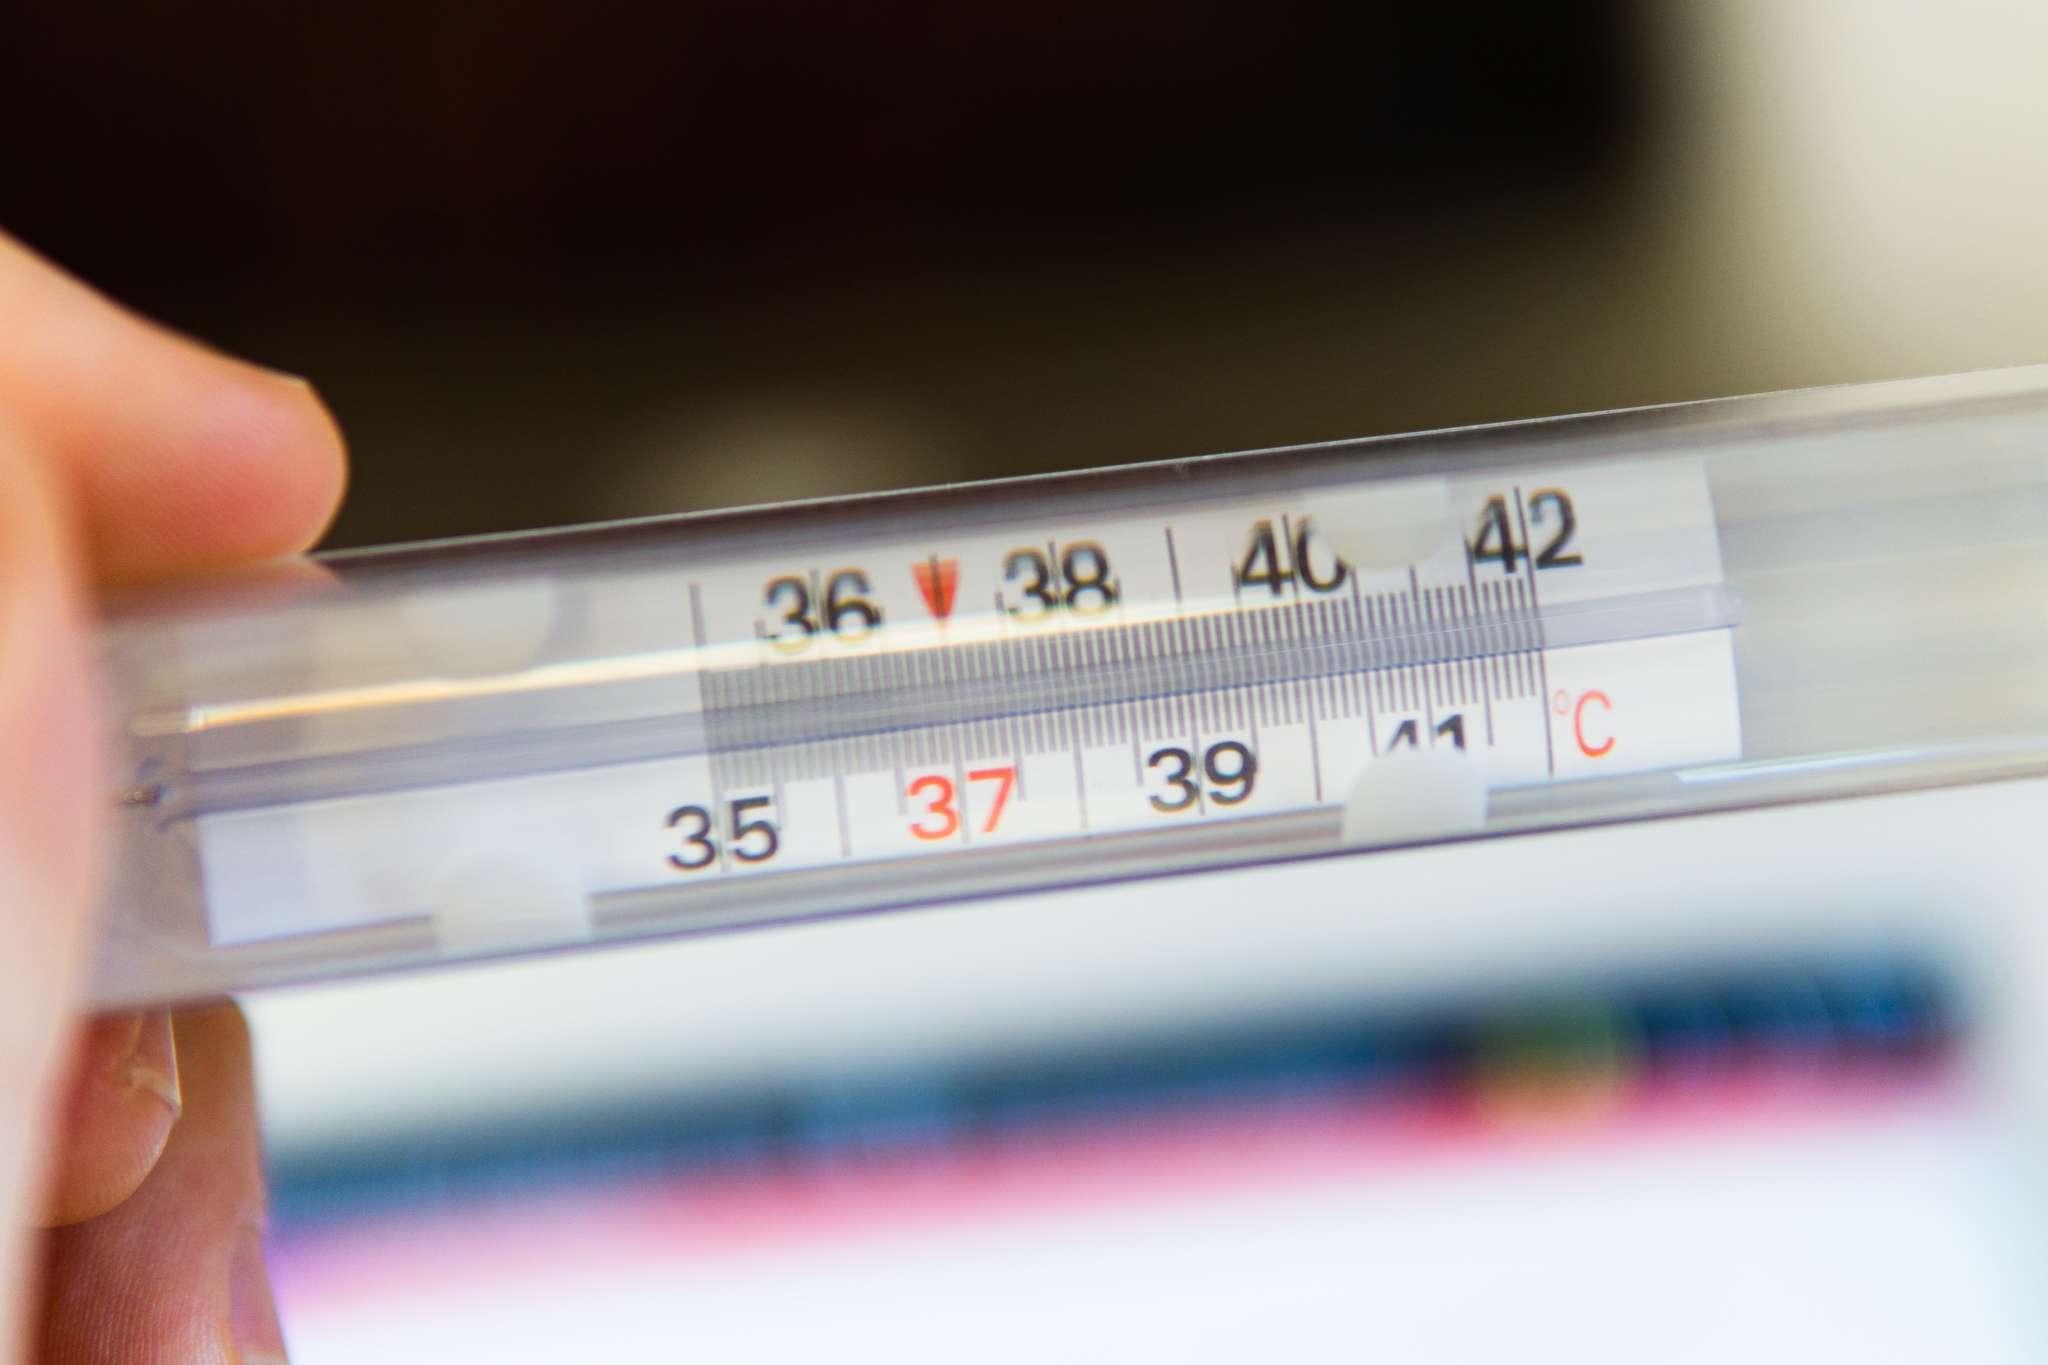 Rechtenvrije foto van Mattea Fusco via Unsplash van thermometer die 37 graden aangeeft.